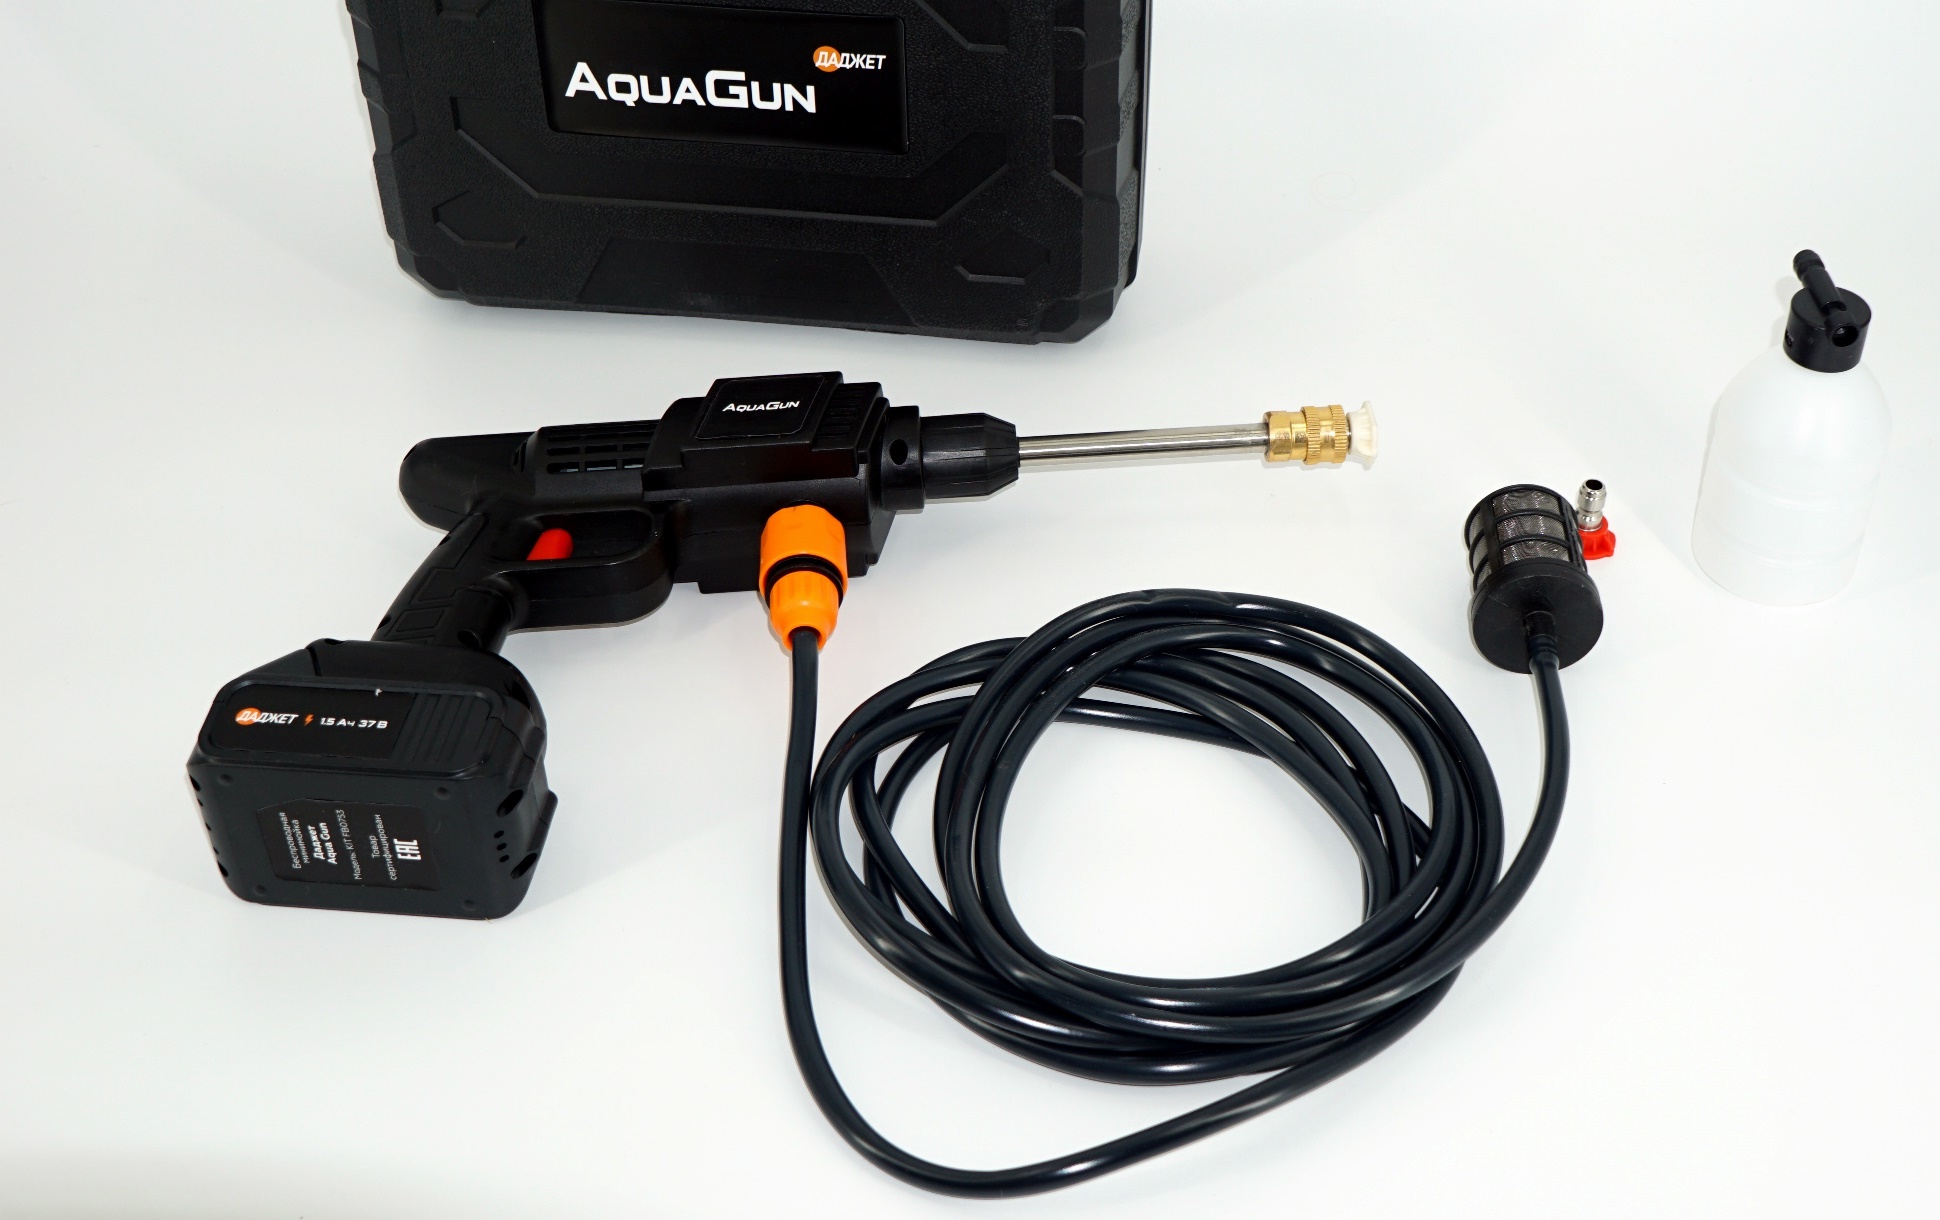 Aqua gun